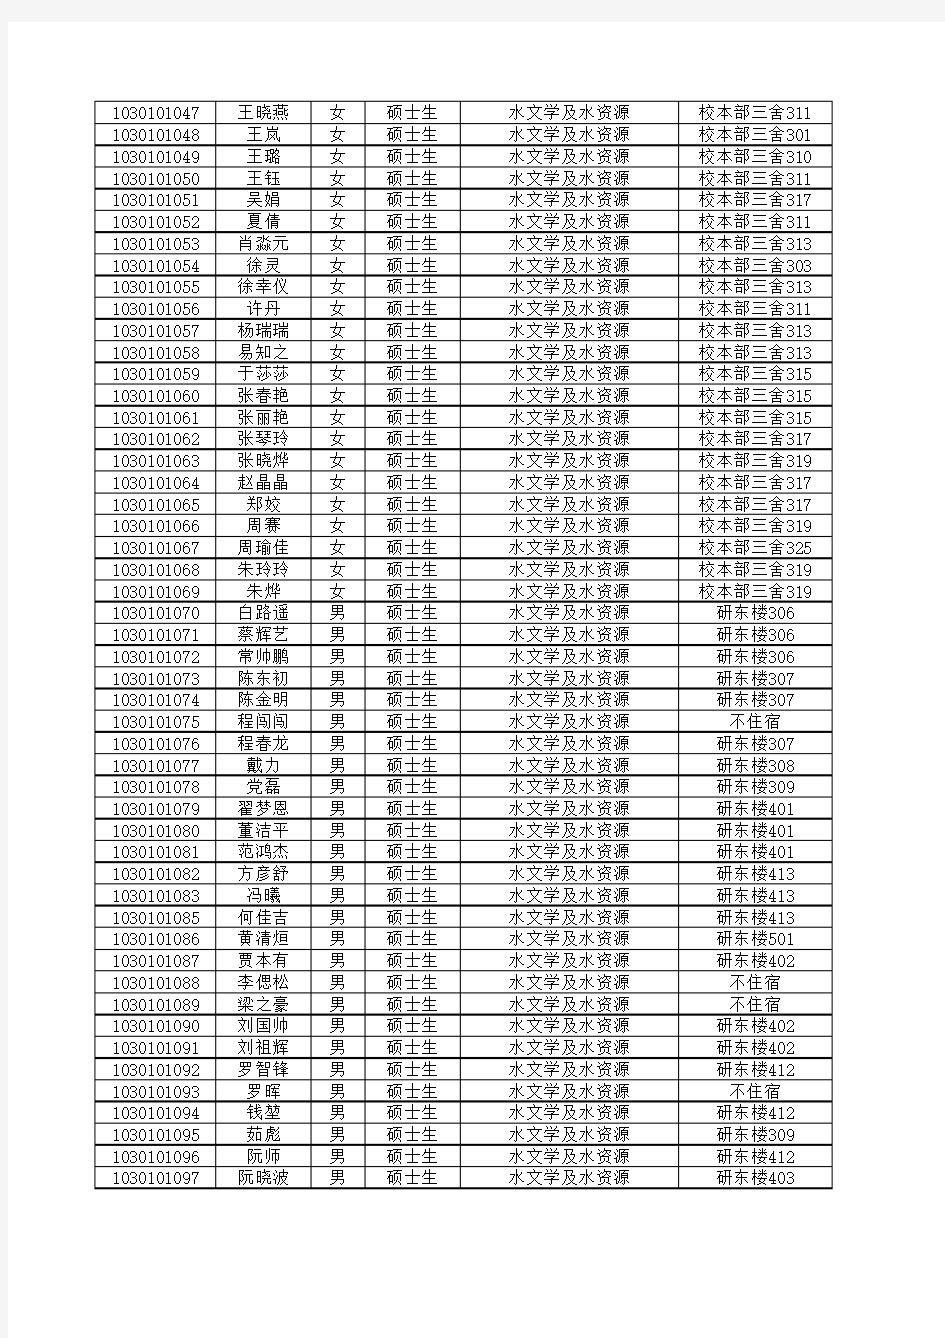 河海大学2010级硕士生名单(含住宿信息)